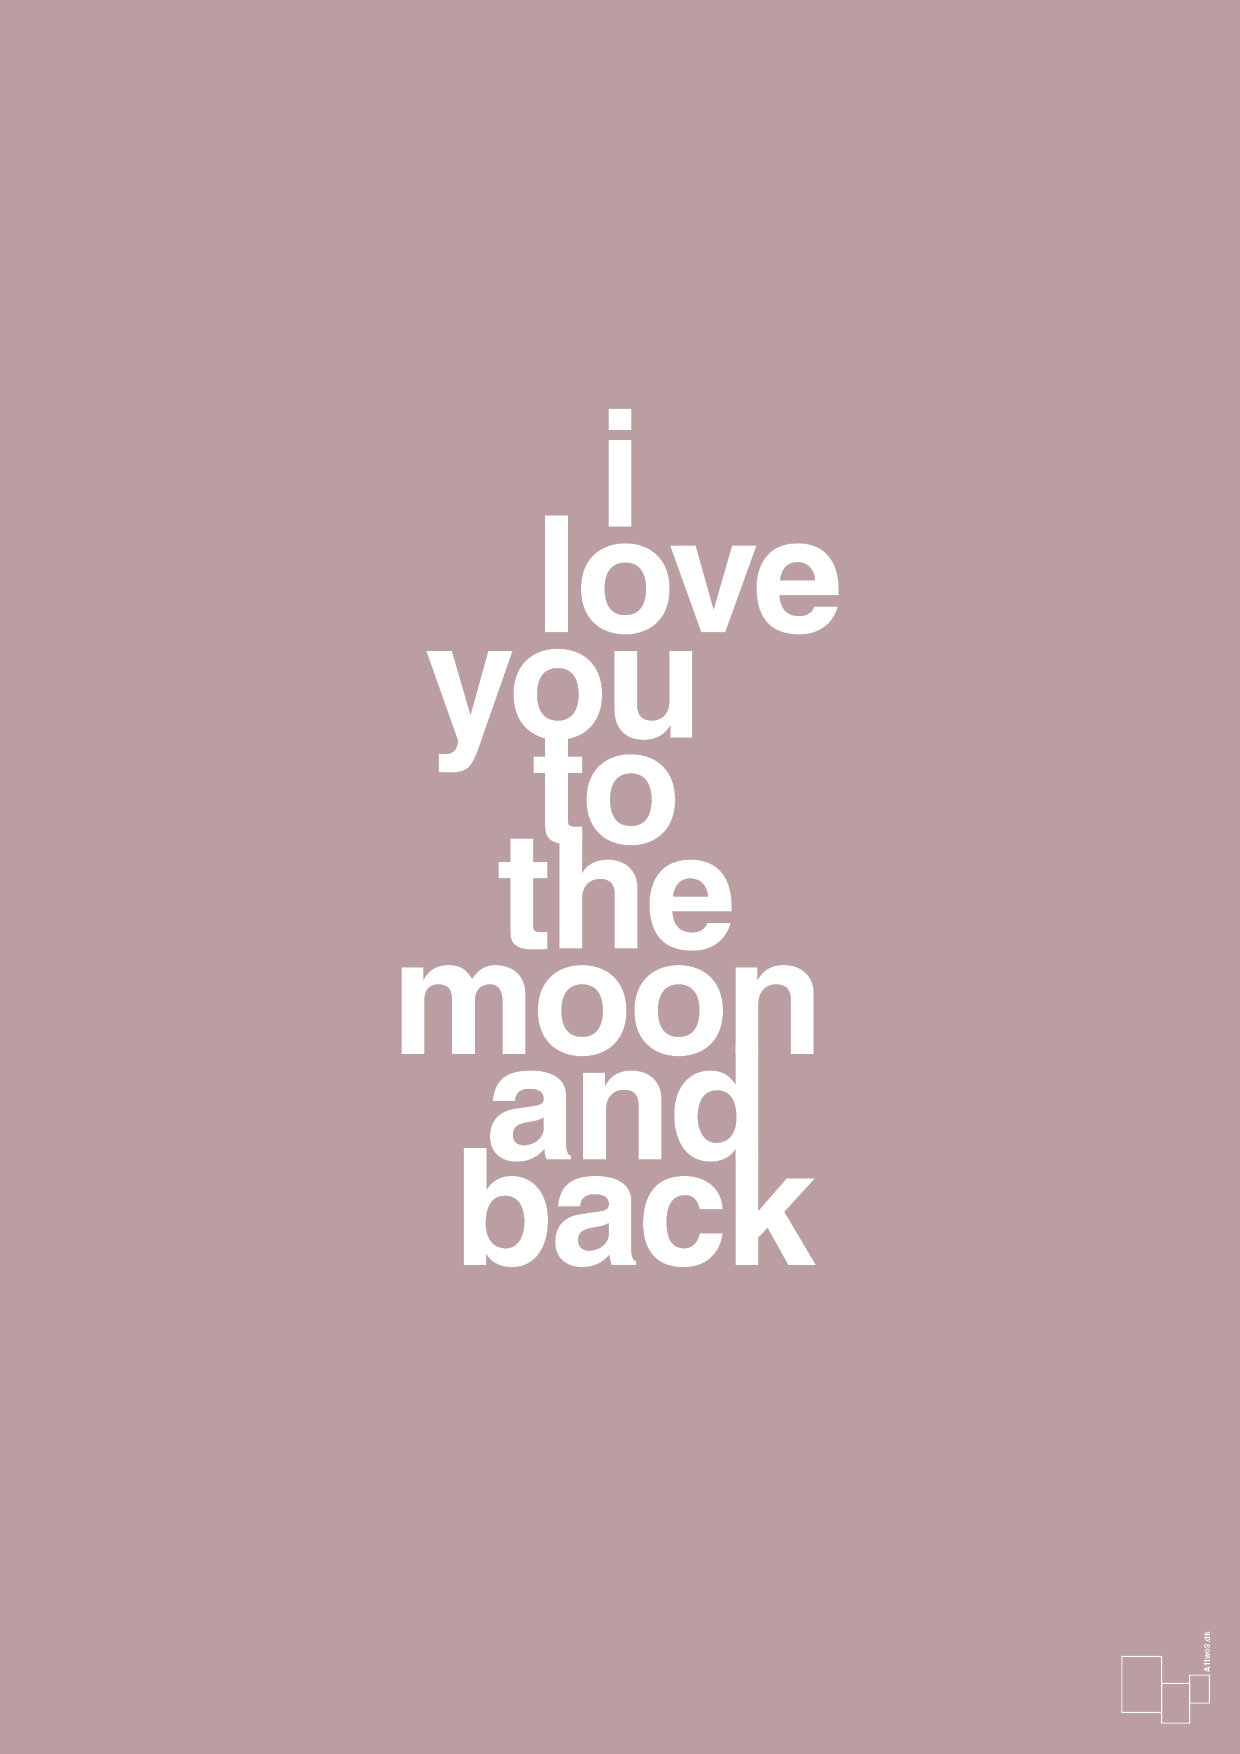 i love you to the moon and back - Plakat med Ordsprog i Light Rose